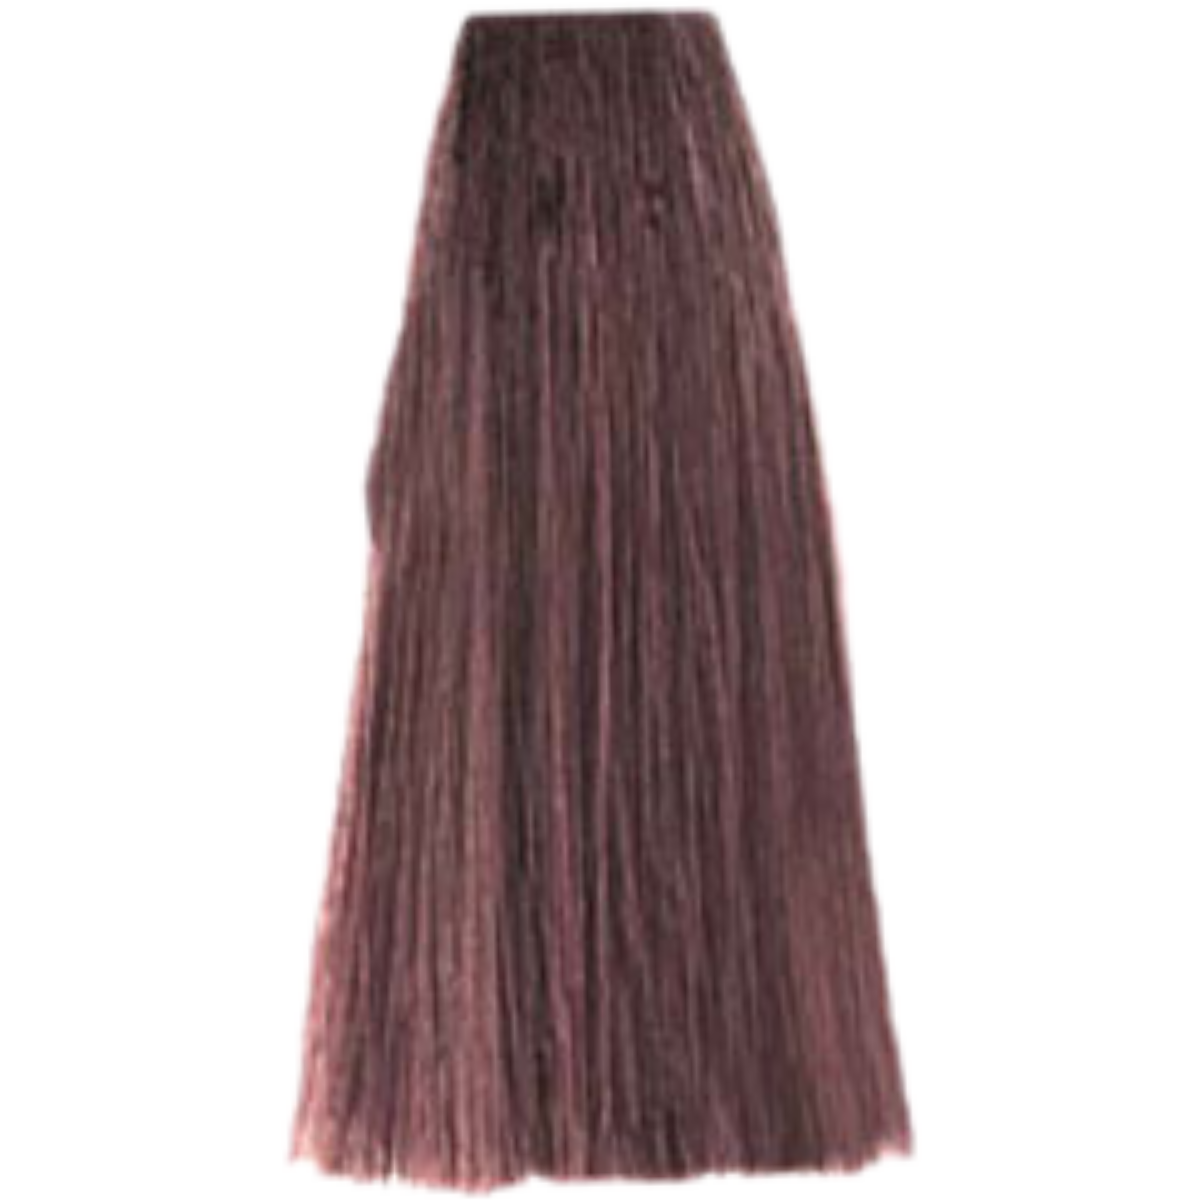 צבע שיער 6.52 DARK CHOCOLATE MAHOGANY BLONDE פארמויטה FarmaVita צבע לשיער 100 גרם